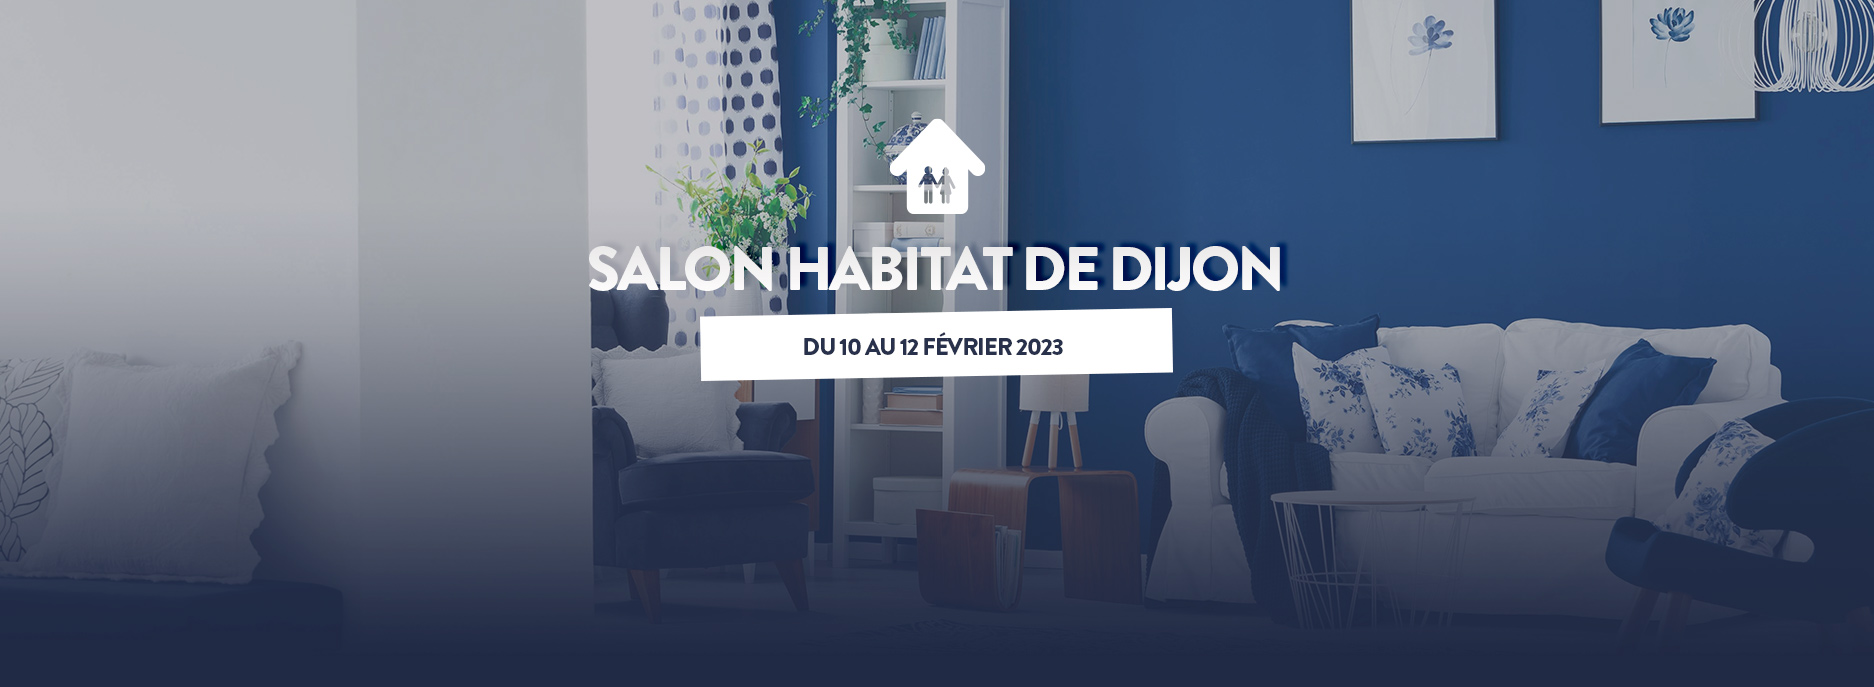 Salon Habitat de Dijon du 10 au 12 février